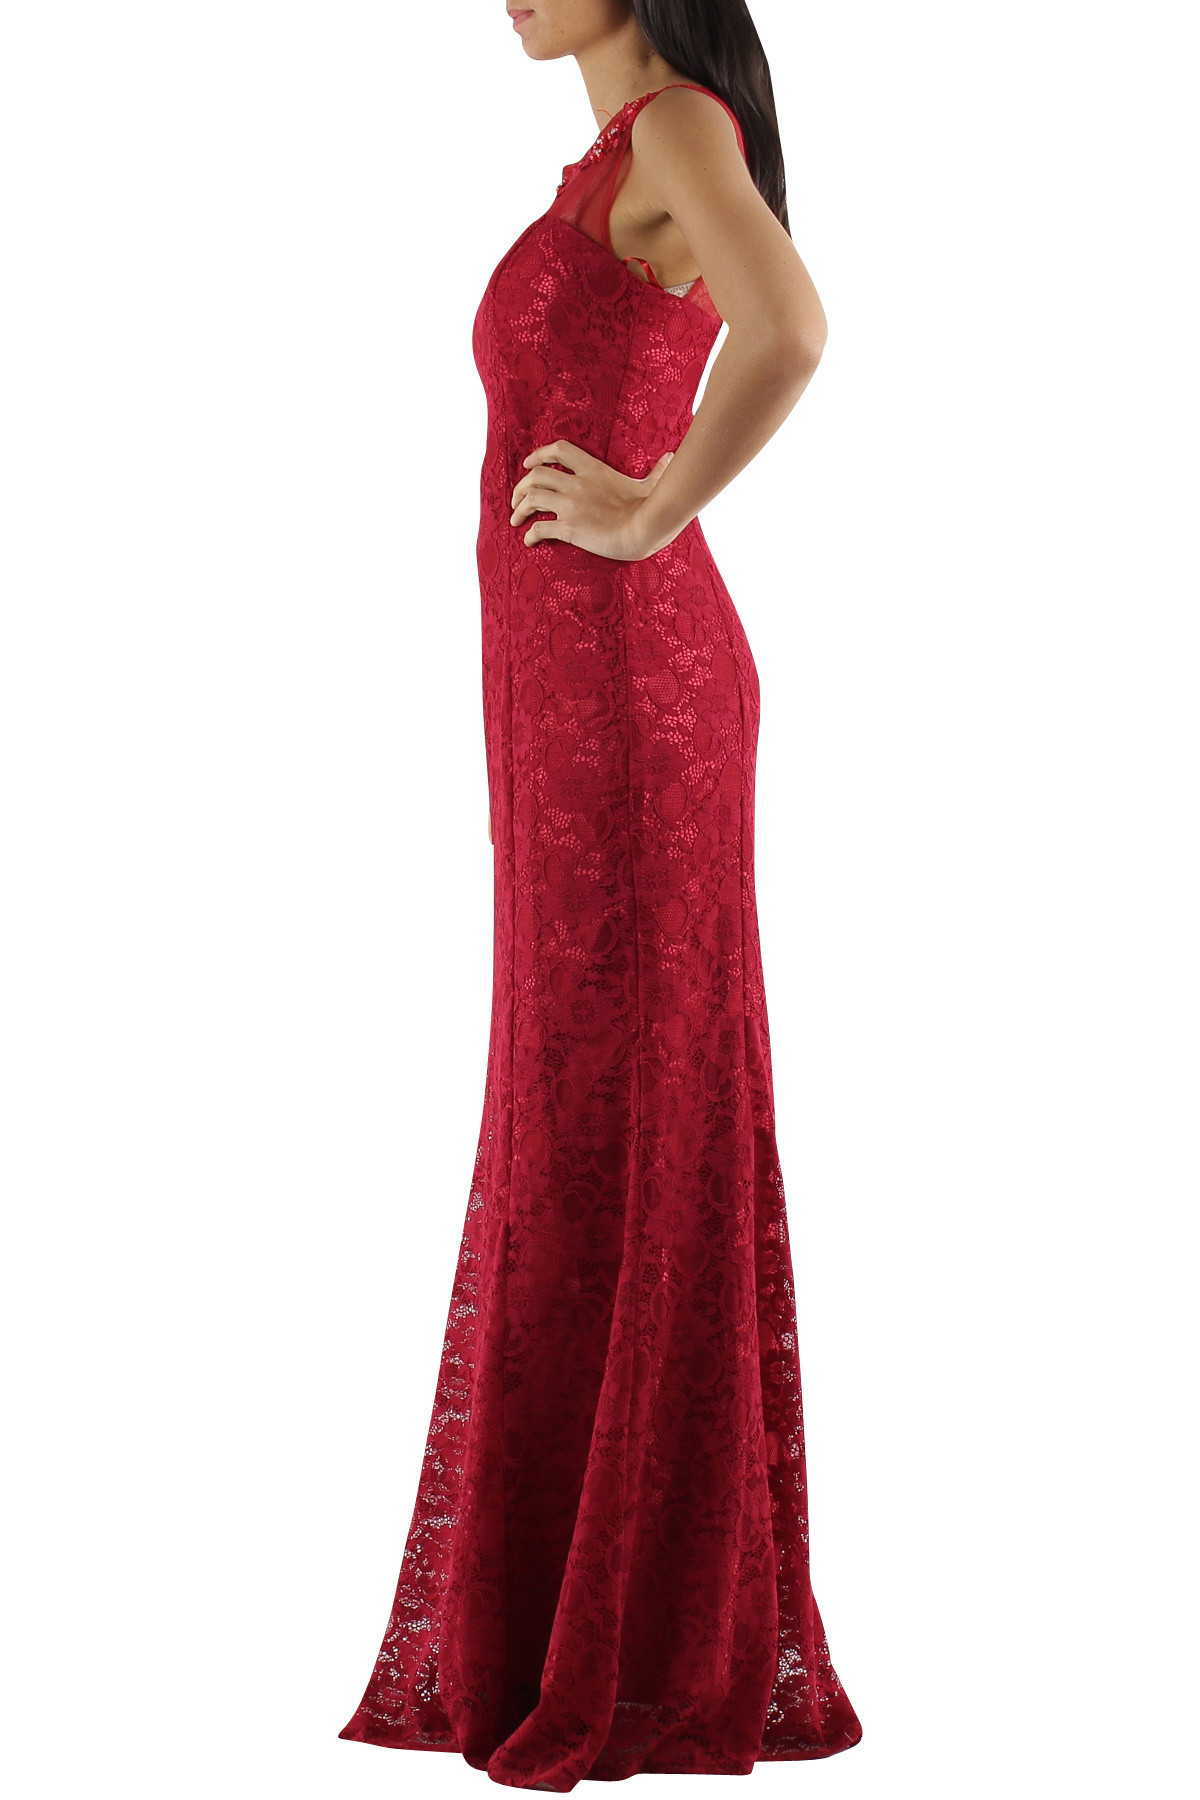 Společenské a plesové šaty krajkové dlouhé luxusní CHARM'S Paris červené - Červená - CHARM'S Paris XS